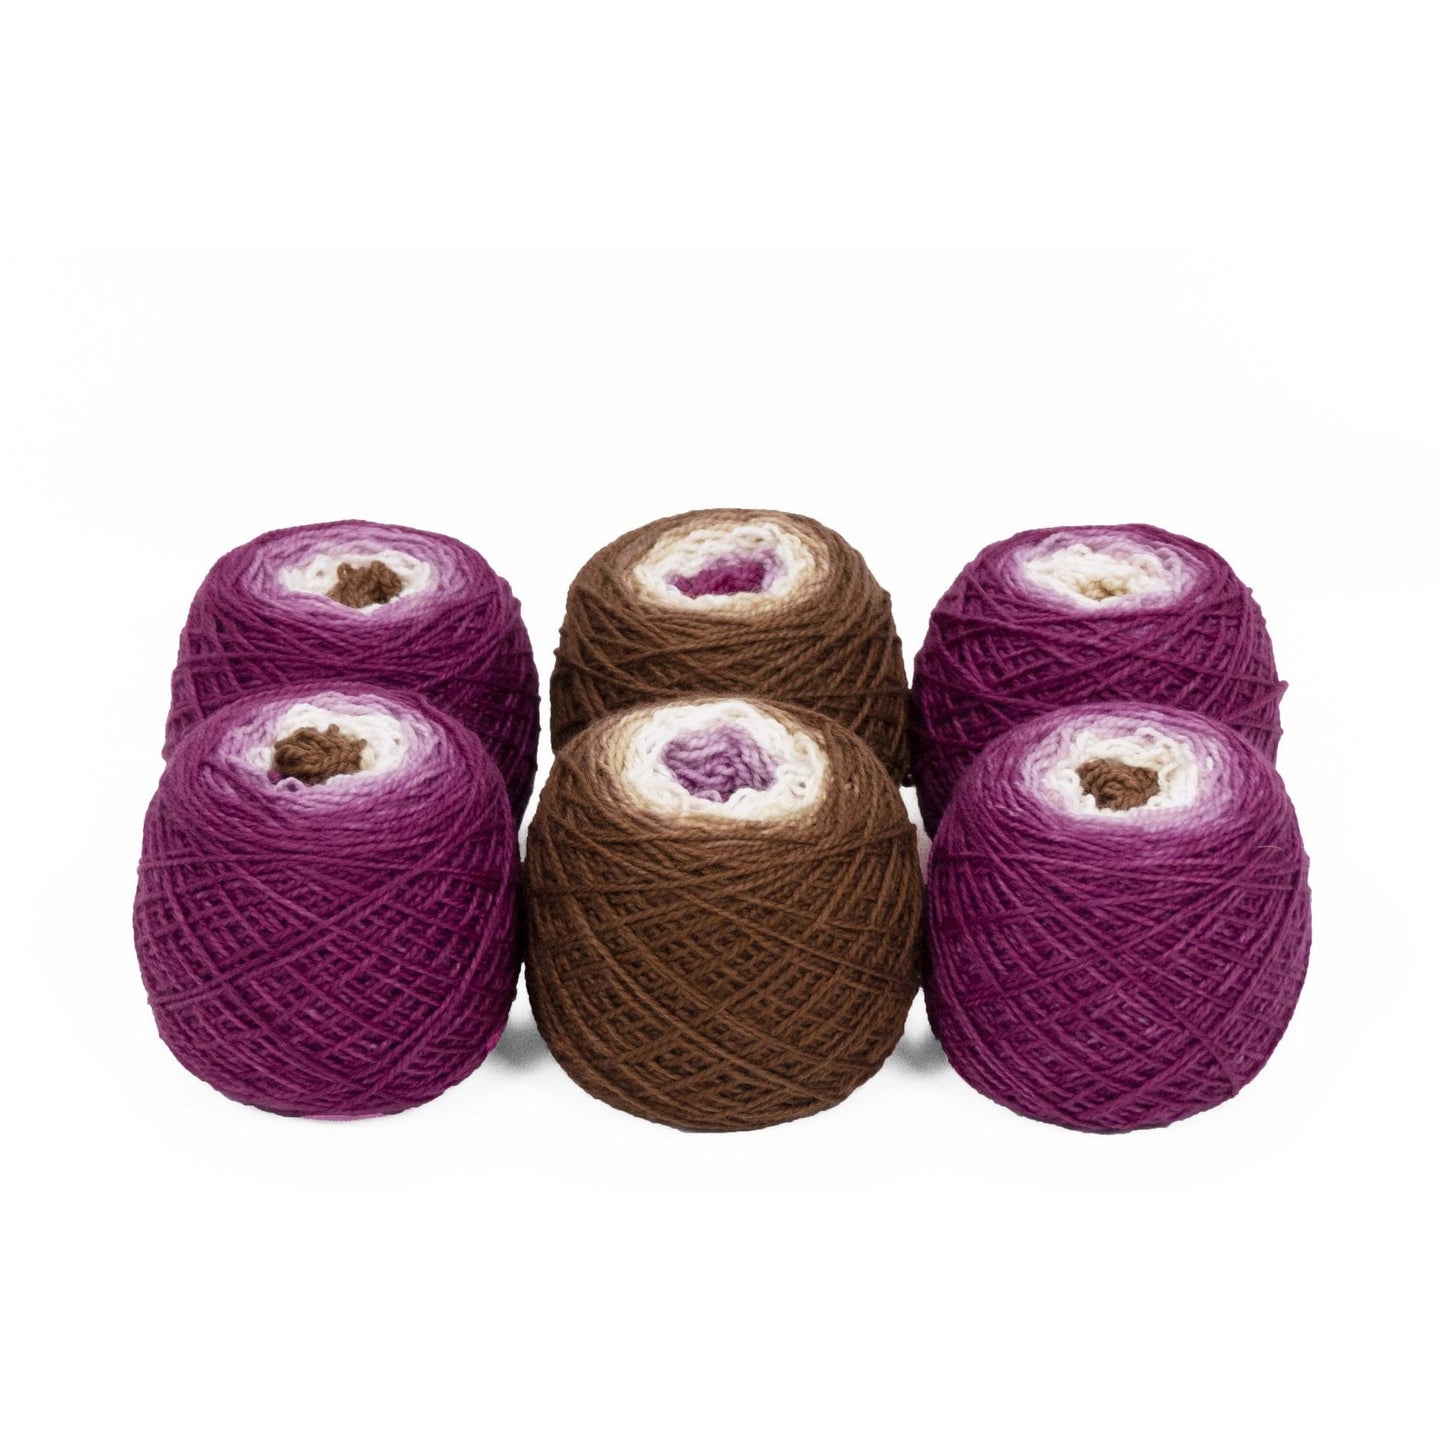 Sock Twins " Venetian Canal " - Lleap SW Merino/Nylon Handpainted Gradient Sock Yarn Set